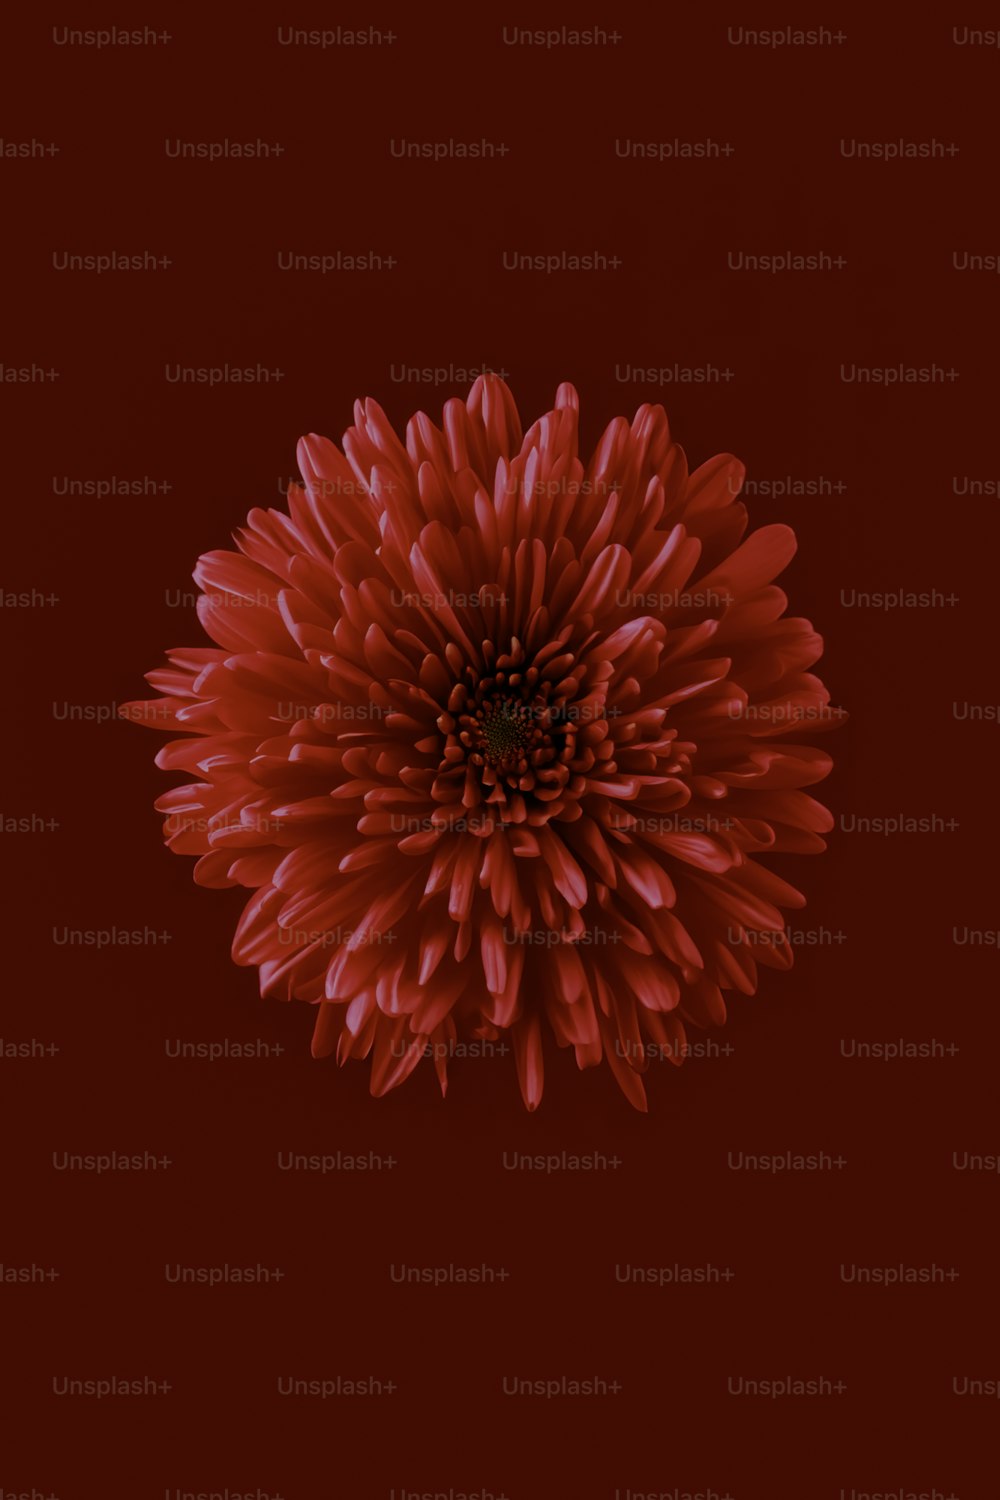 1K+ Floral Pattern Pictures  Download Free Images on Unsplash